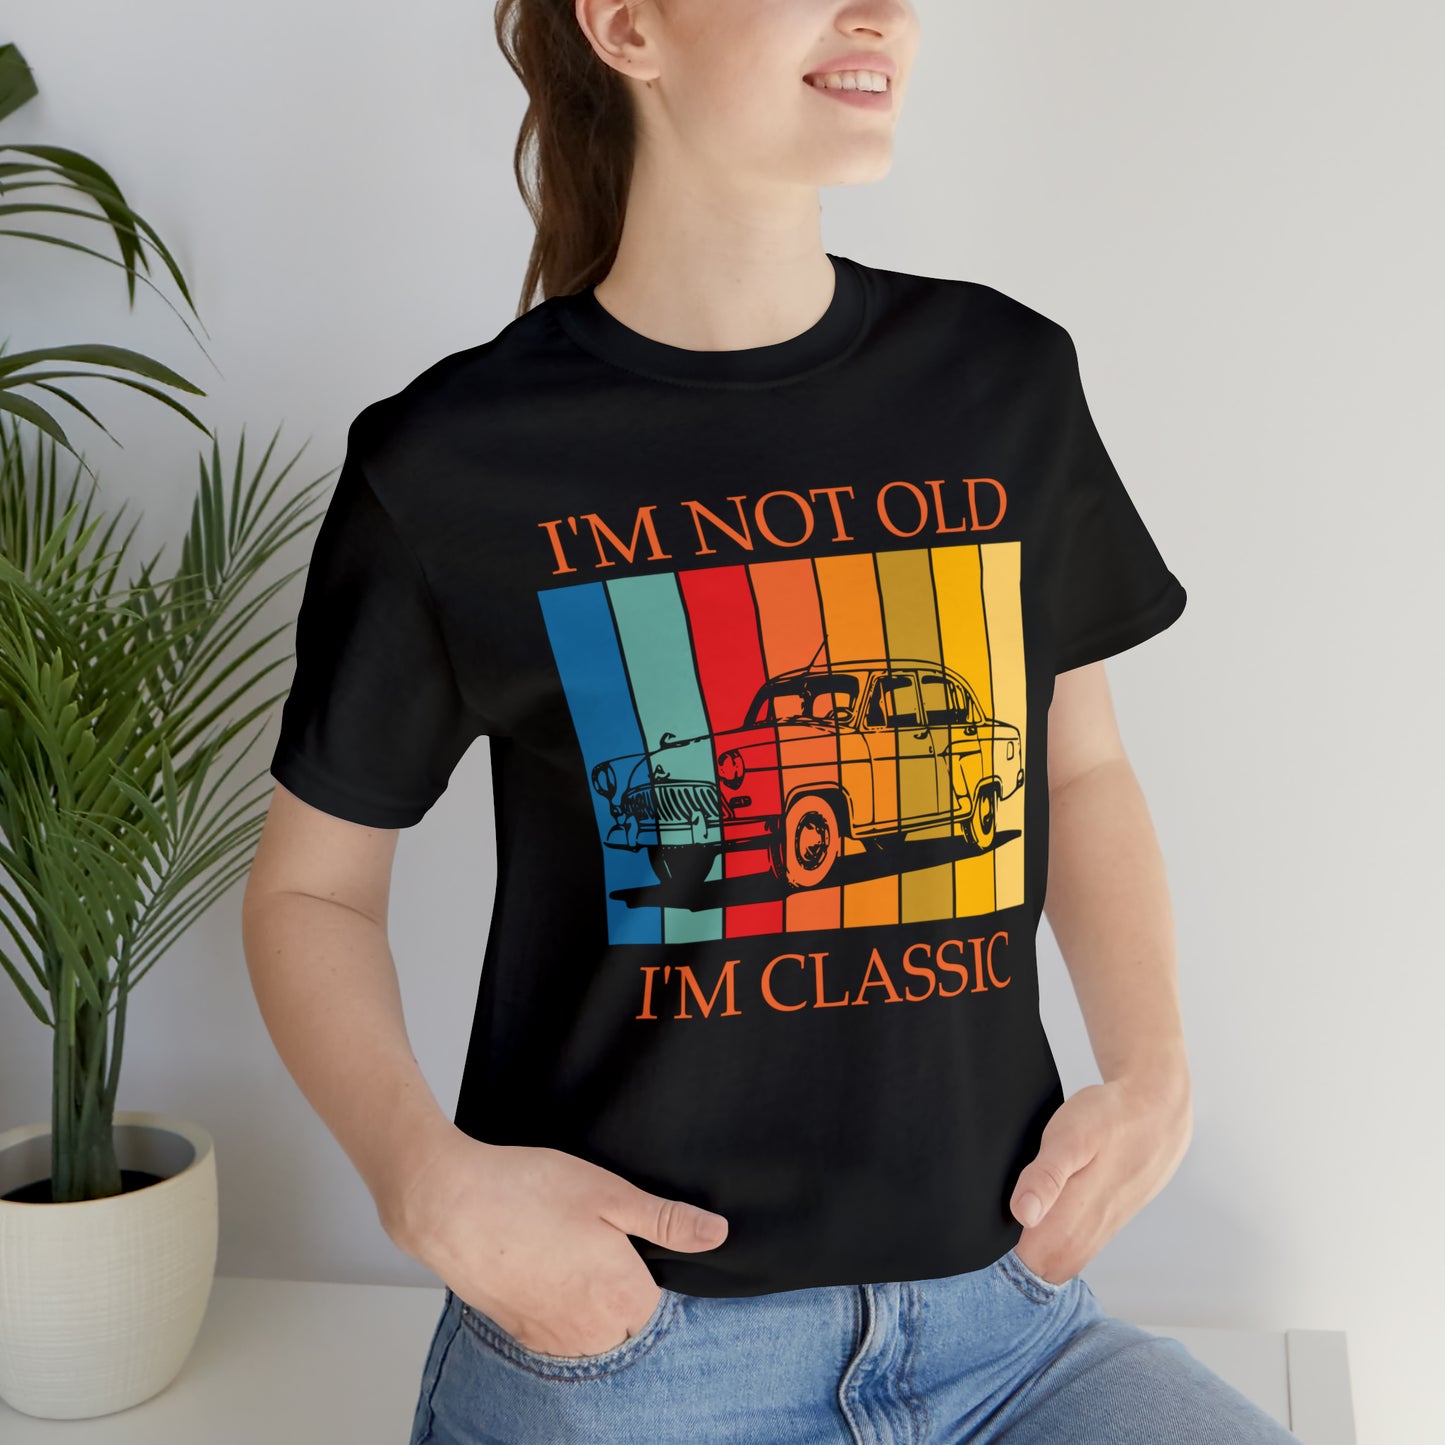 I'm Not Old, I'm Classic T-Shirt, Classic Shirt, I Am Not Old Shirt, Birthday Gift, Car Classic, Old Car